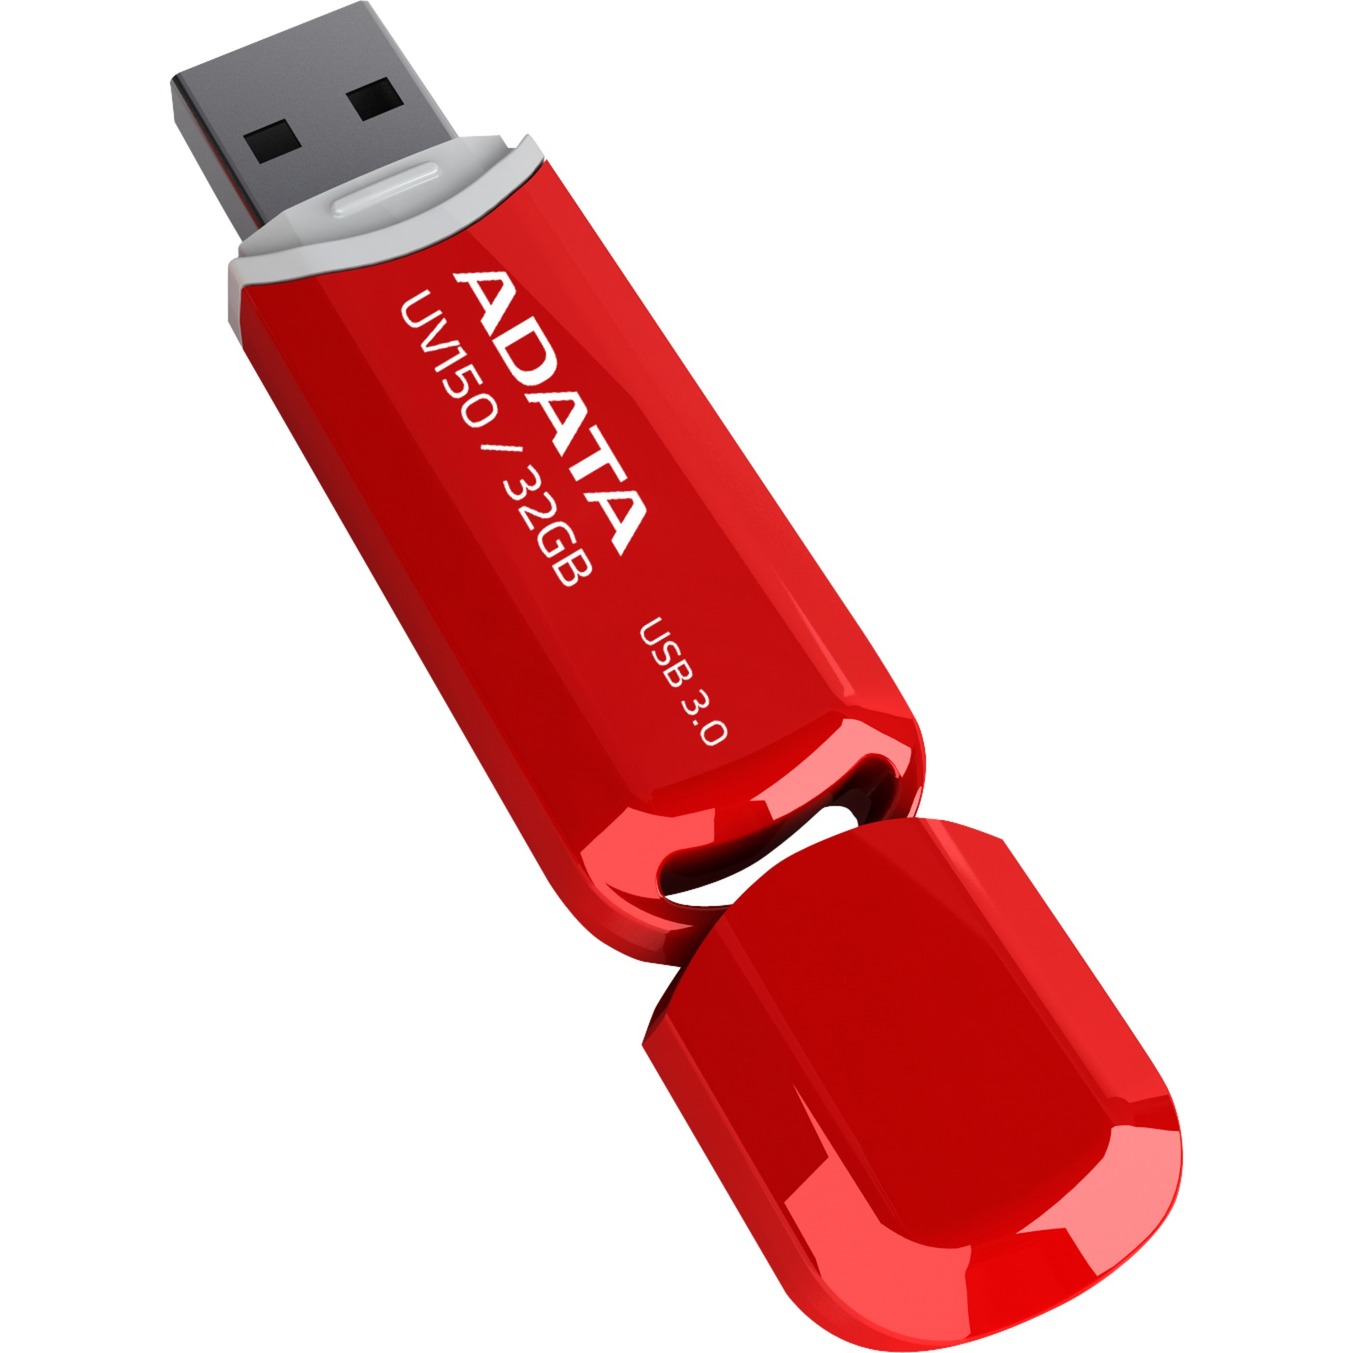 32GB DashDrive UV150 pami?? USB 3.0 (3.1 Gen 1) Z??cze USB typu A Czerwony, No?nik Pendrive USB